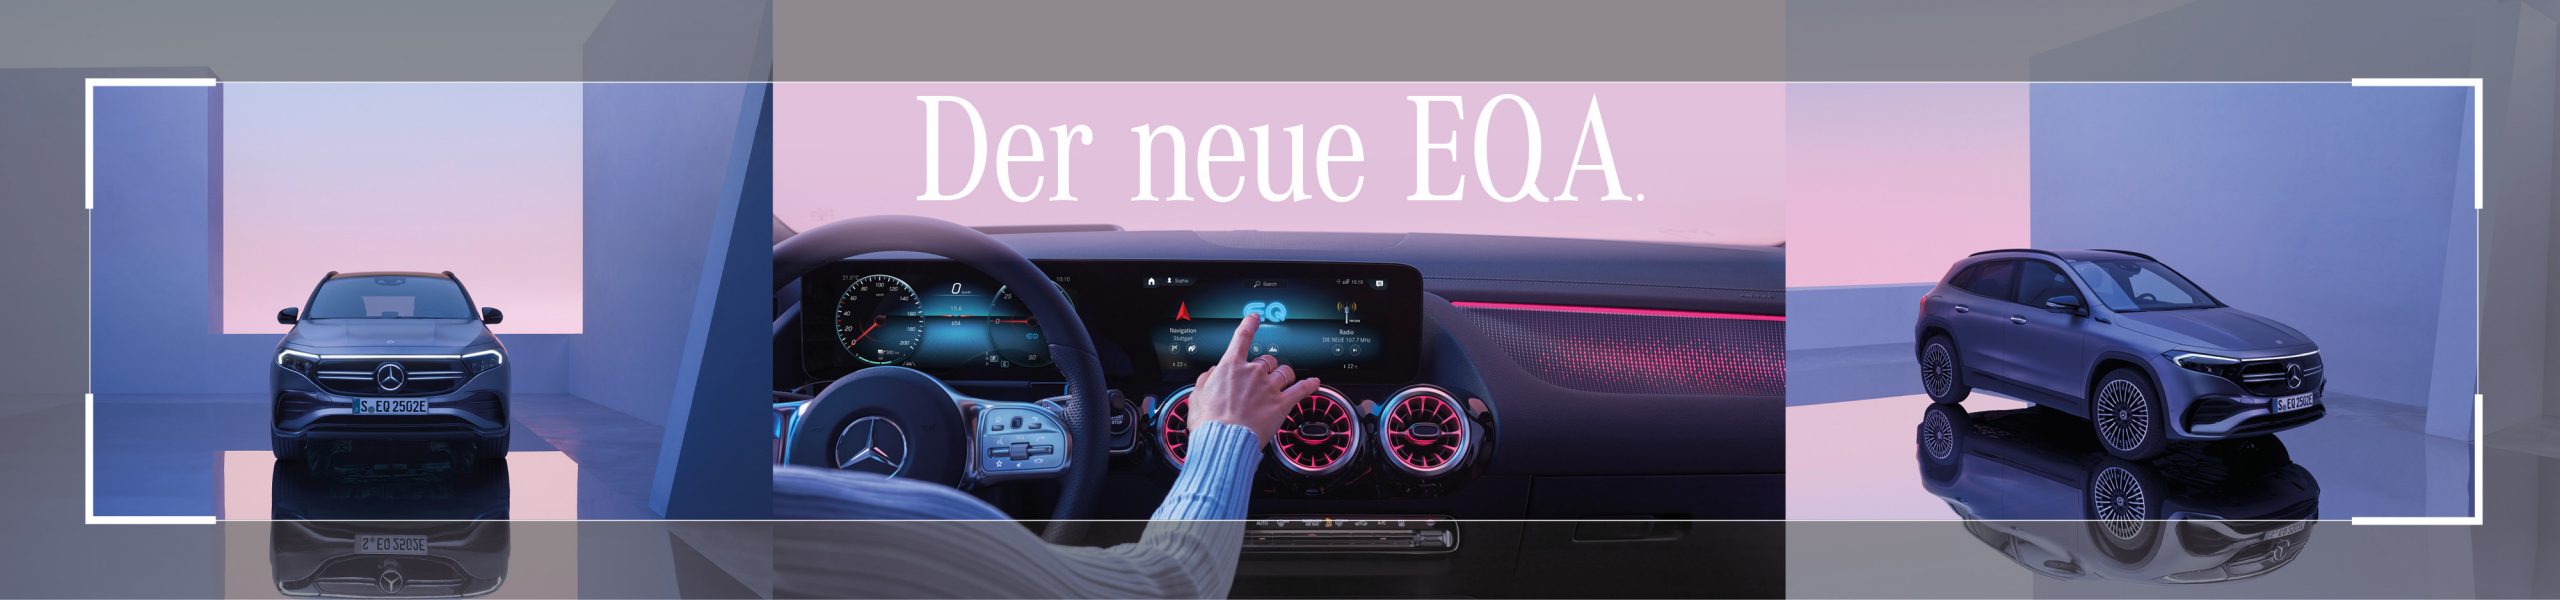 EQA-Der neue bei Mercedes brinkmann 2021